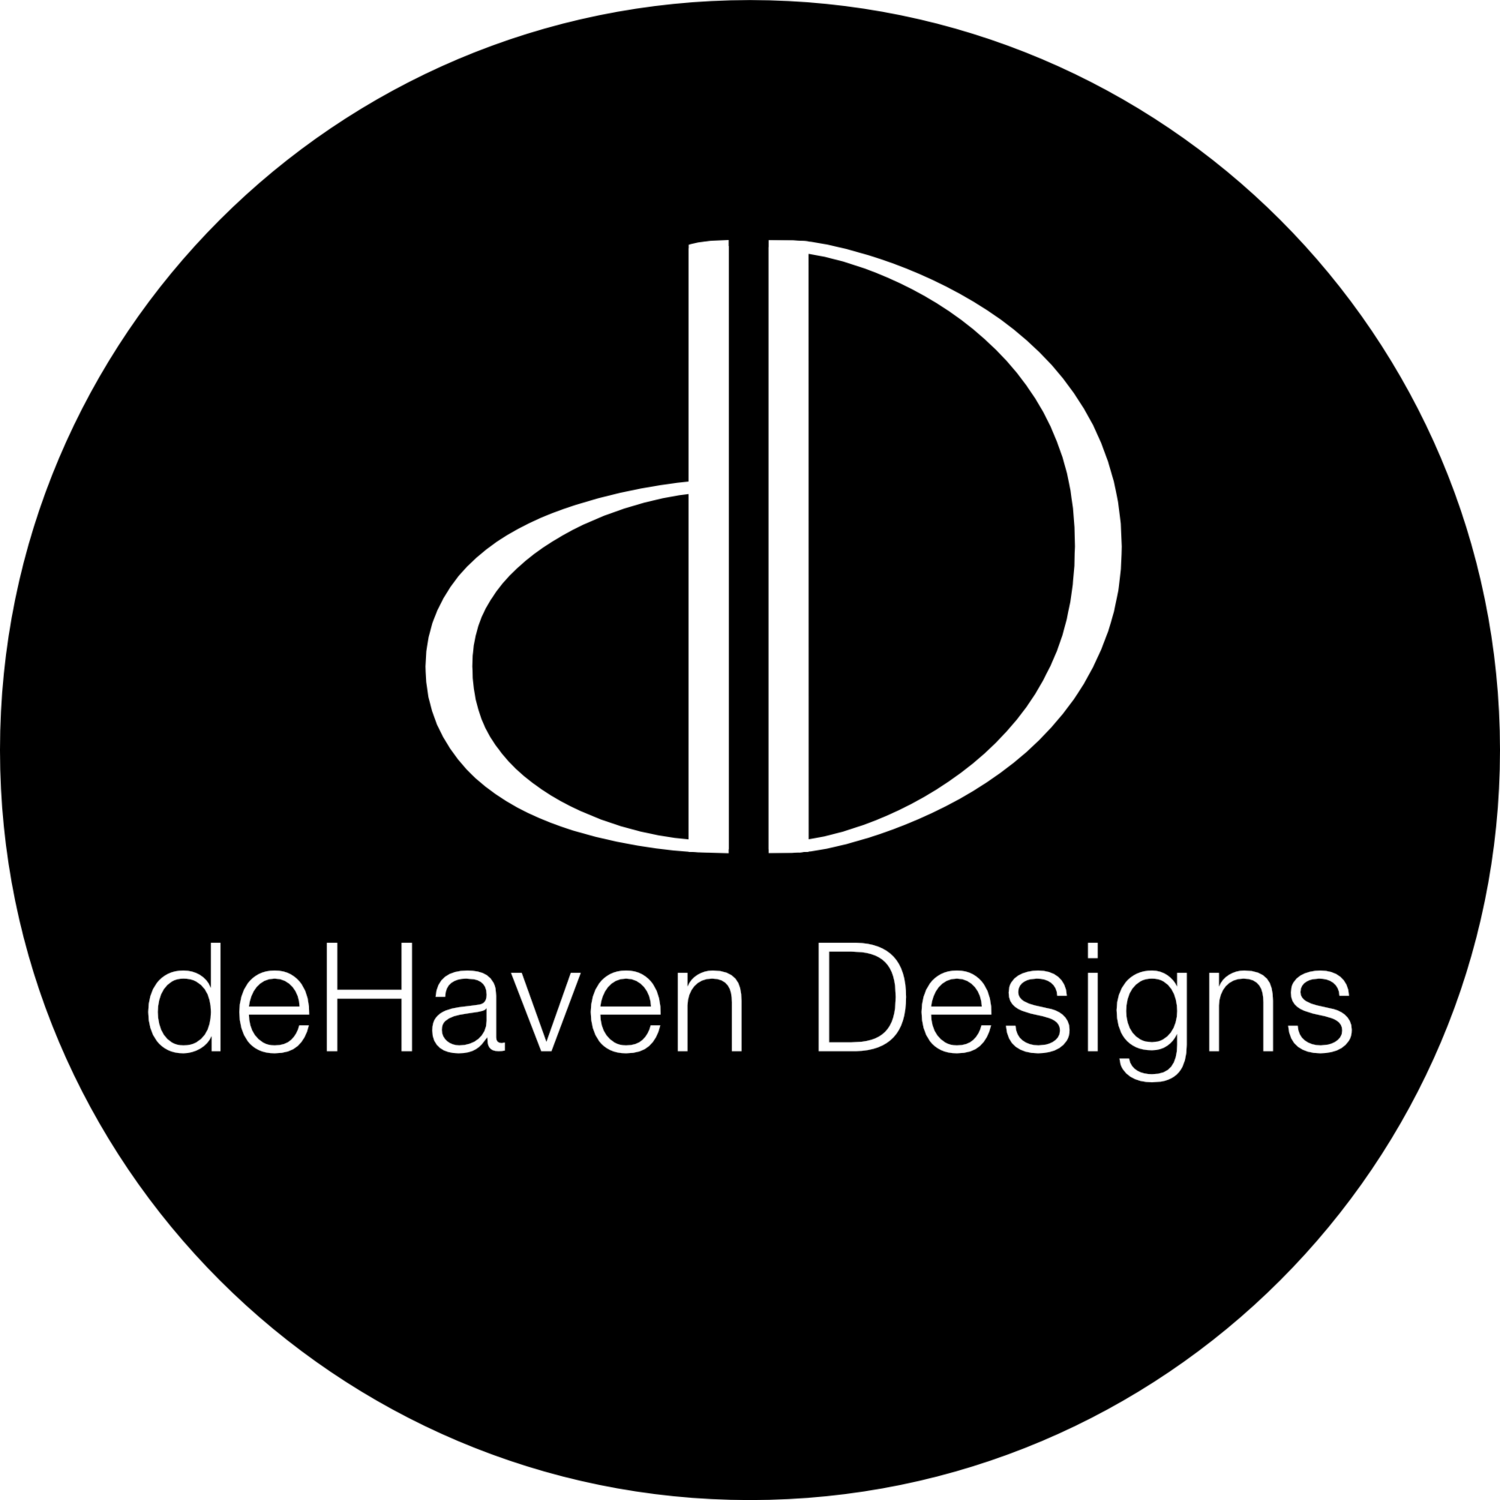 deHaven Designs